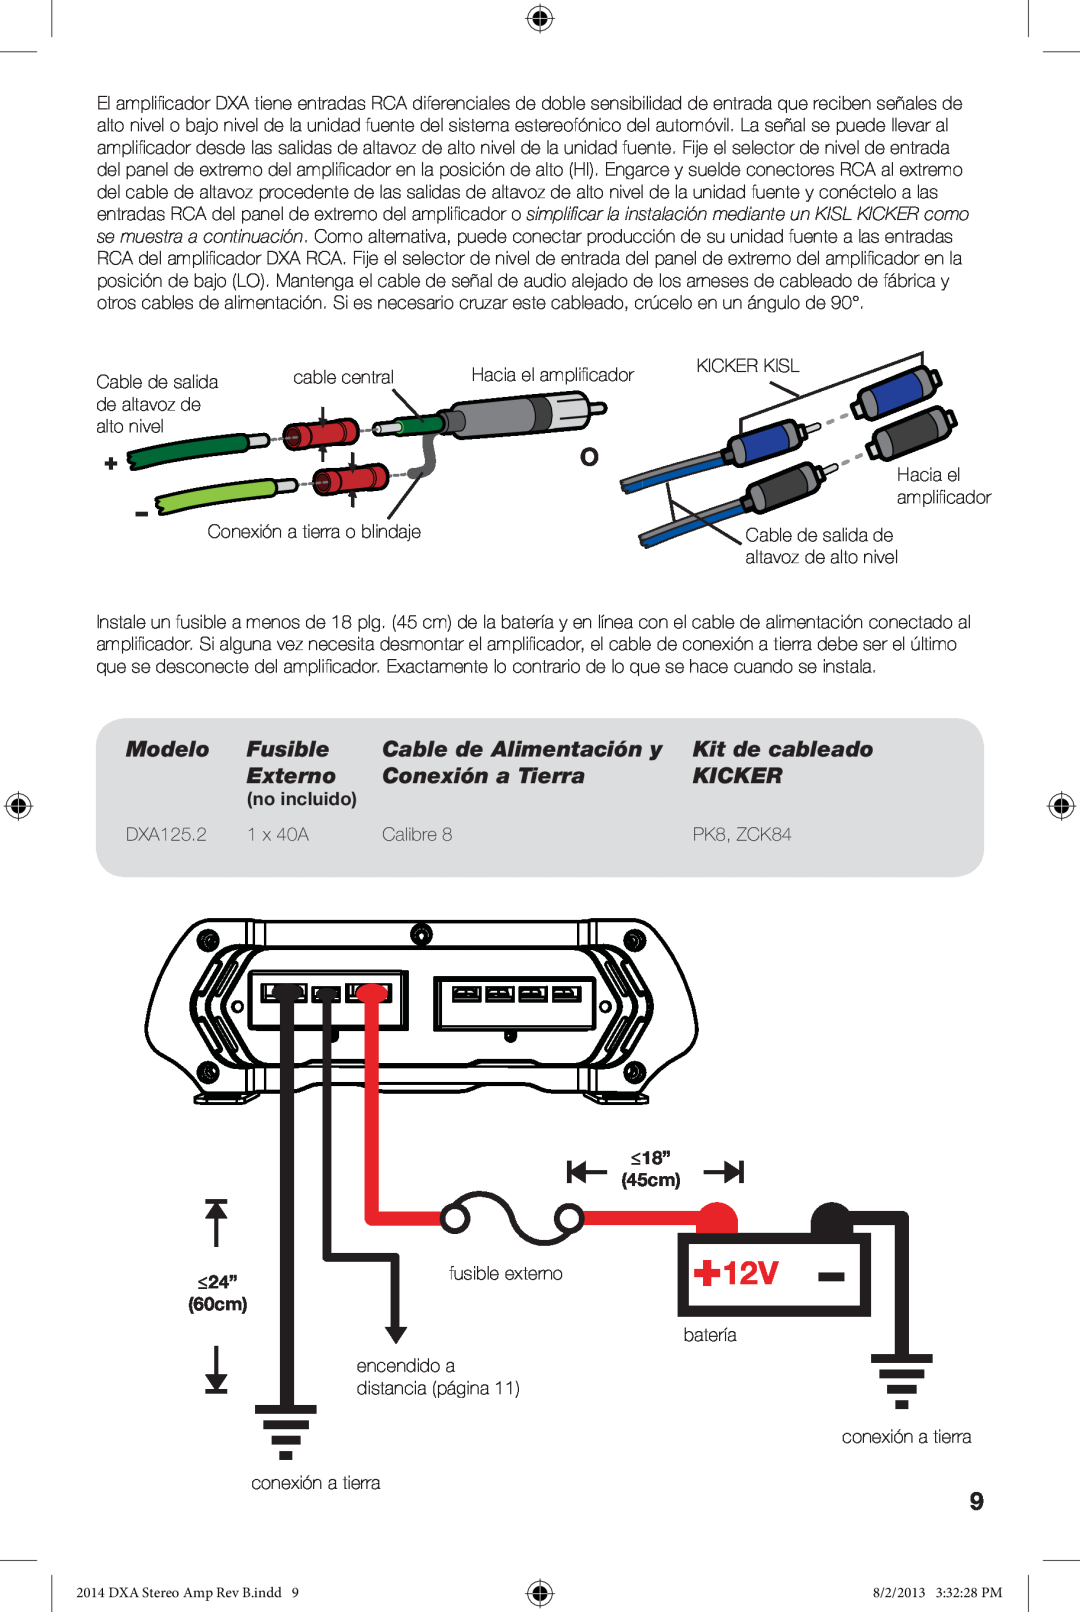 Kicker DXA125.2 Modelo, Fusible, Cable de Alimentación y, Kit de cableado, Externo, Conexión a Tierra, Kicker, no incluido 